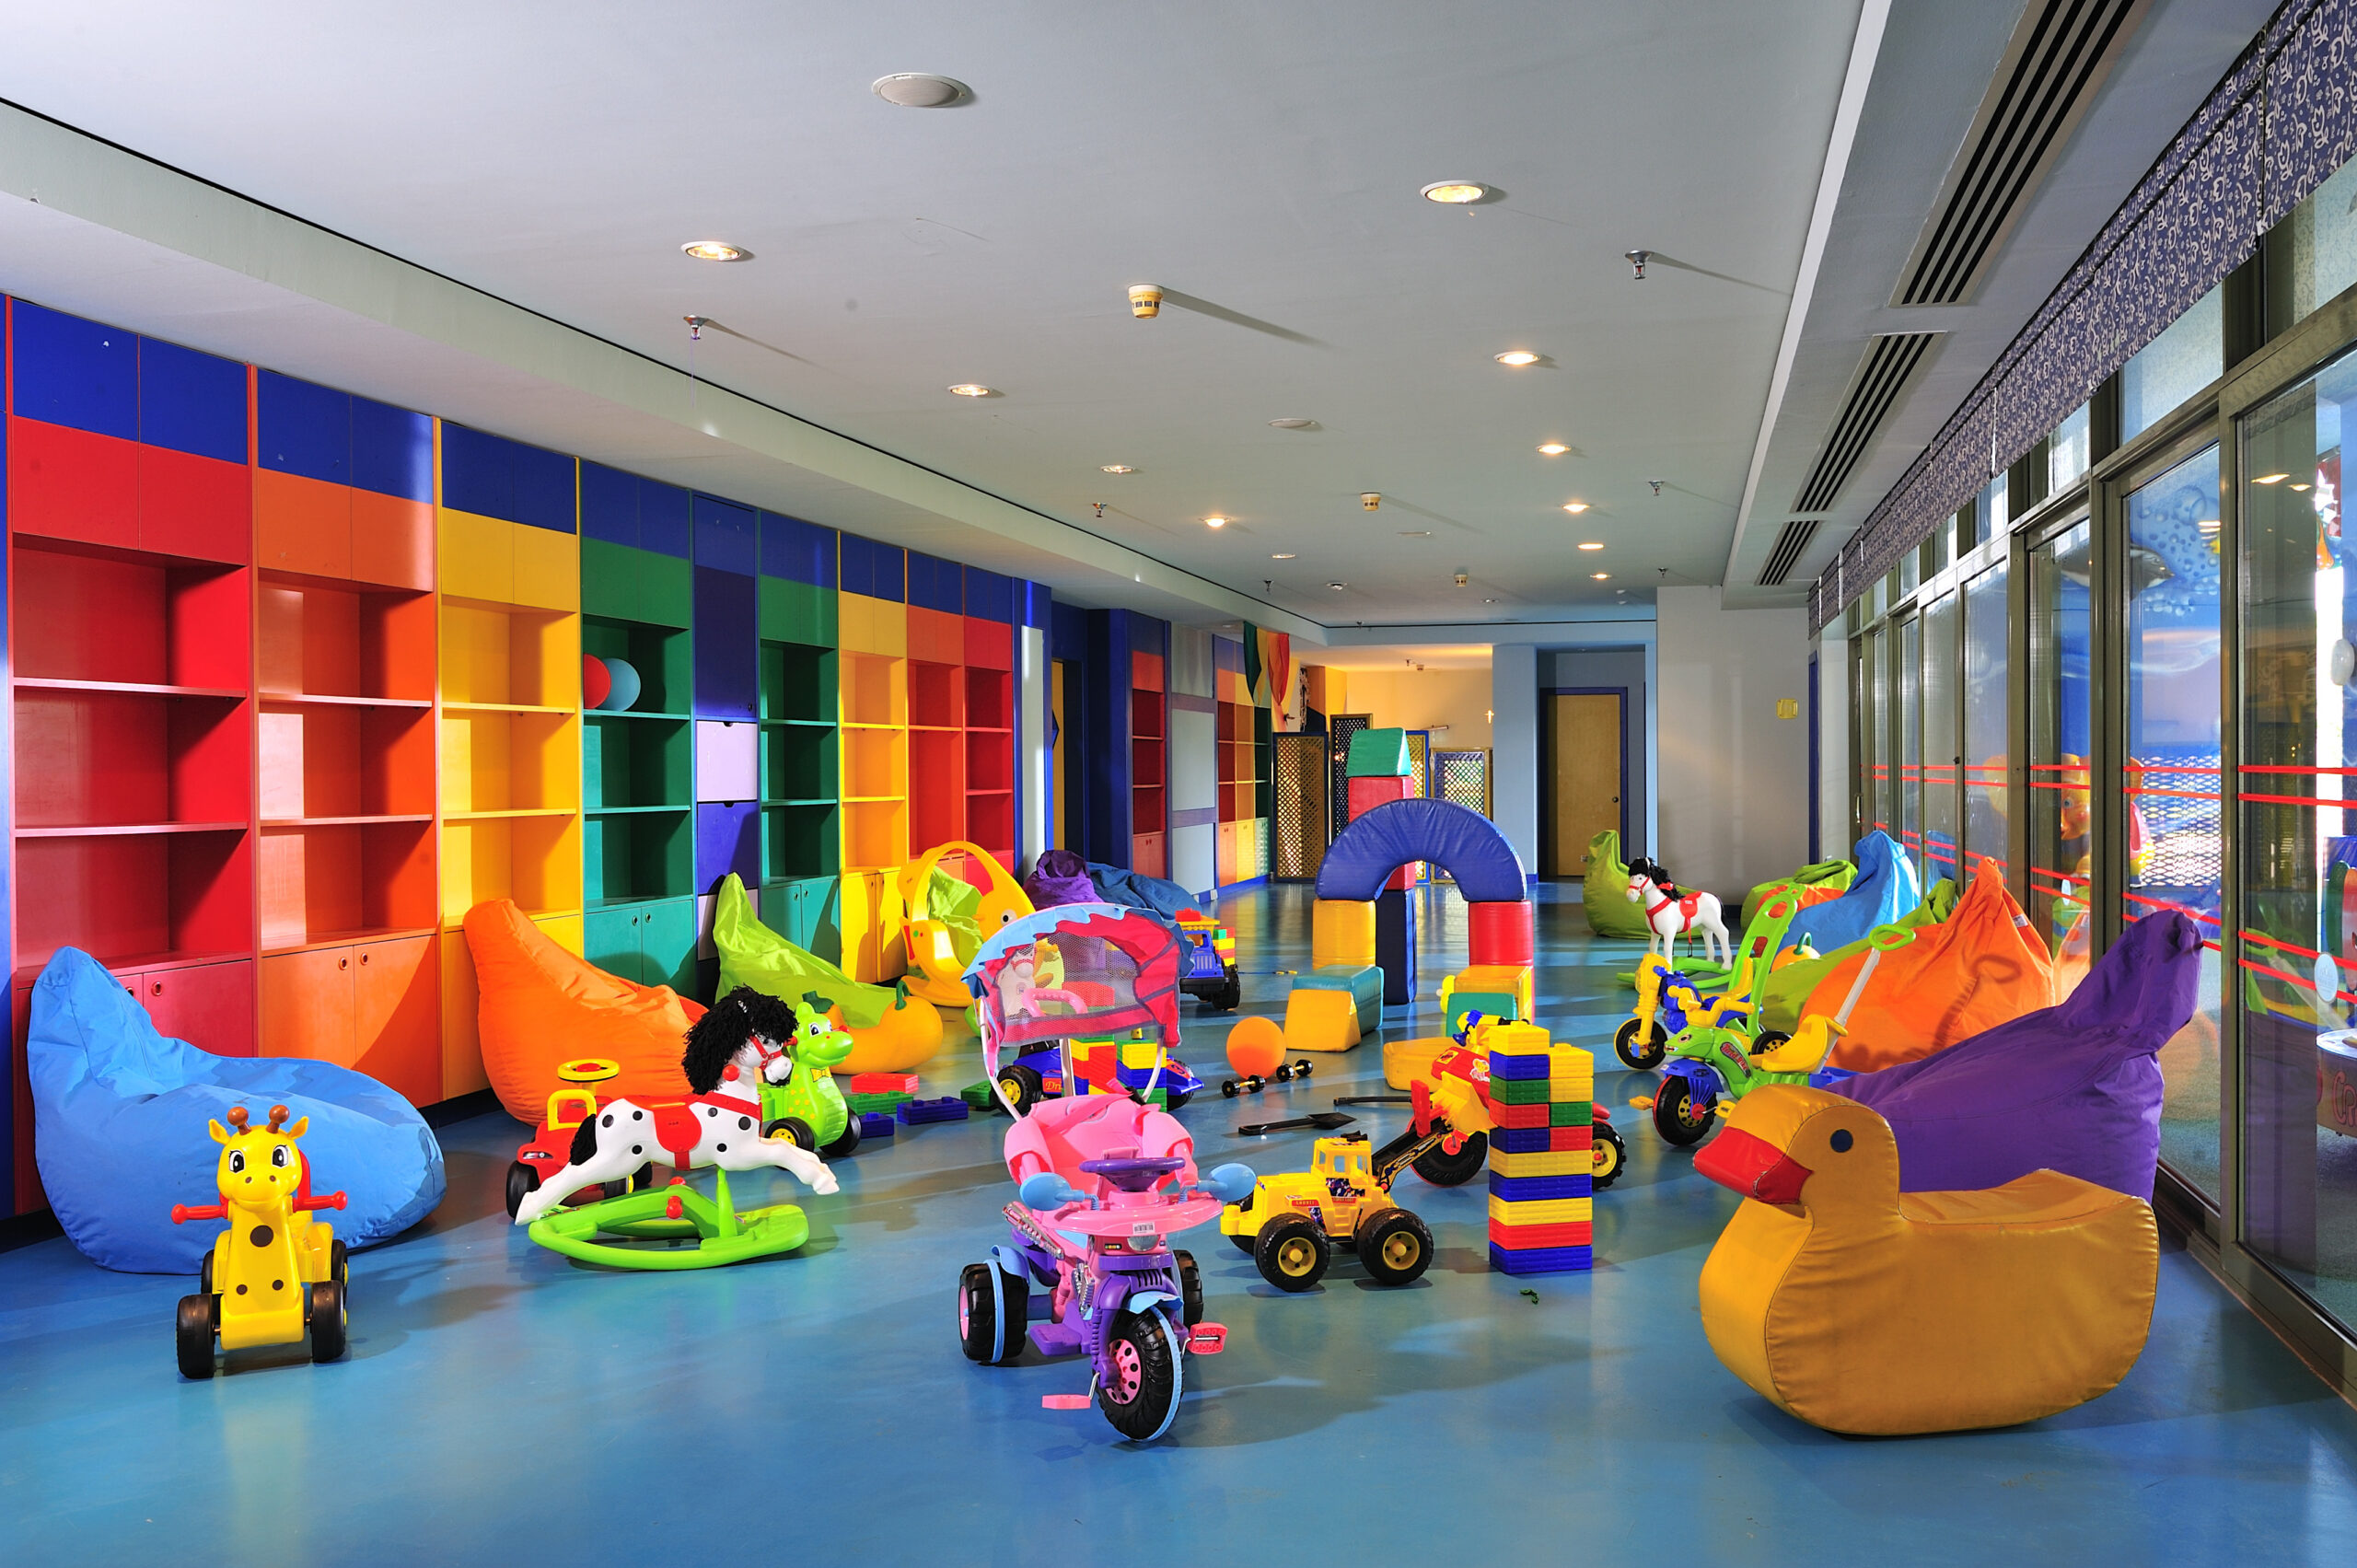 Комната развлечений. Развлекательная комната для детей. Детские комнаты в торговых центрах.